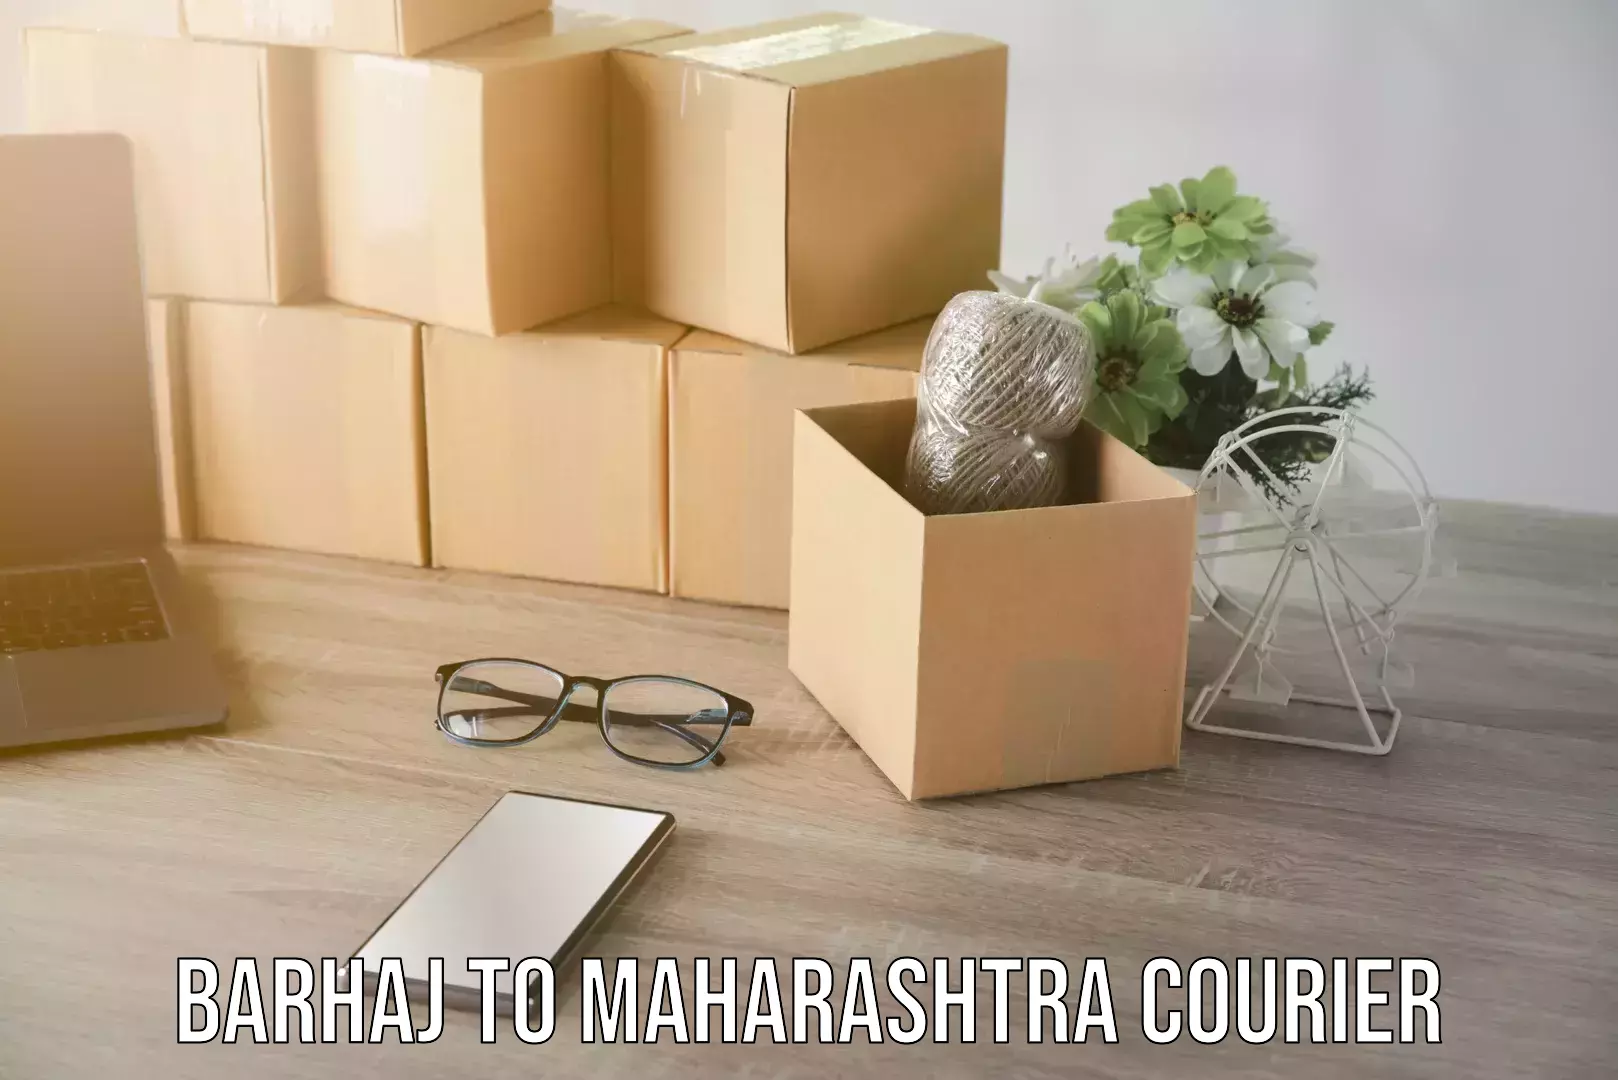 Courier app Barhaj to Maharashtra